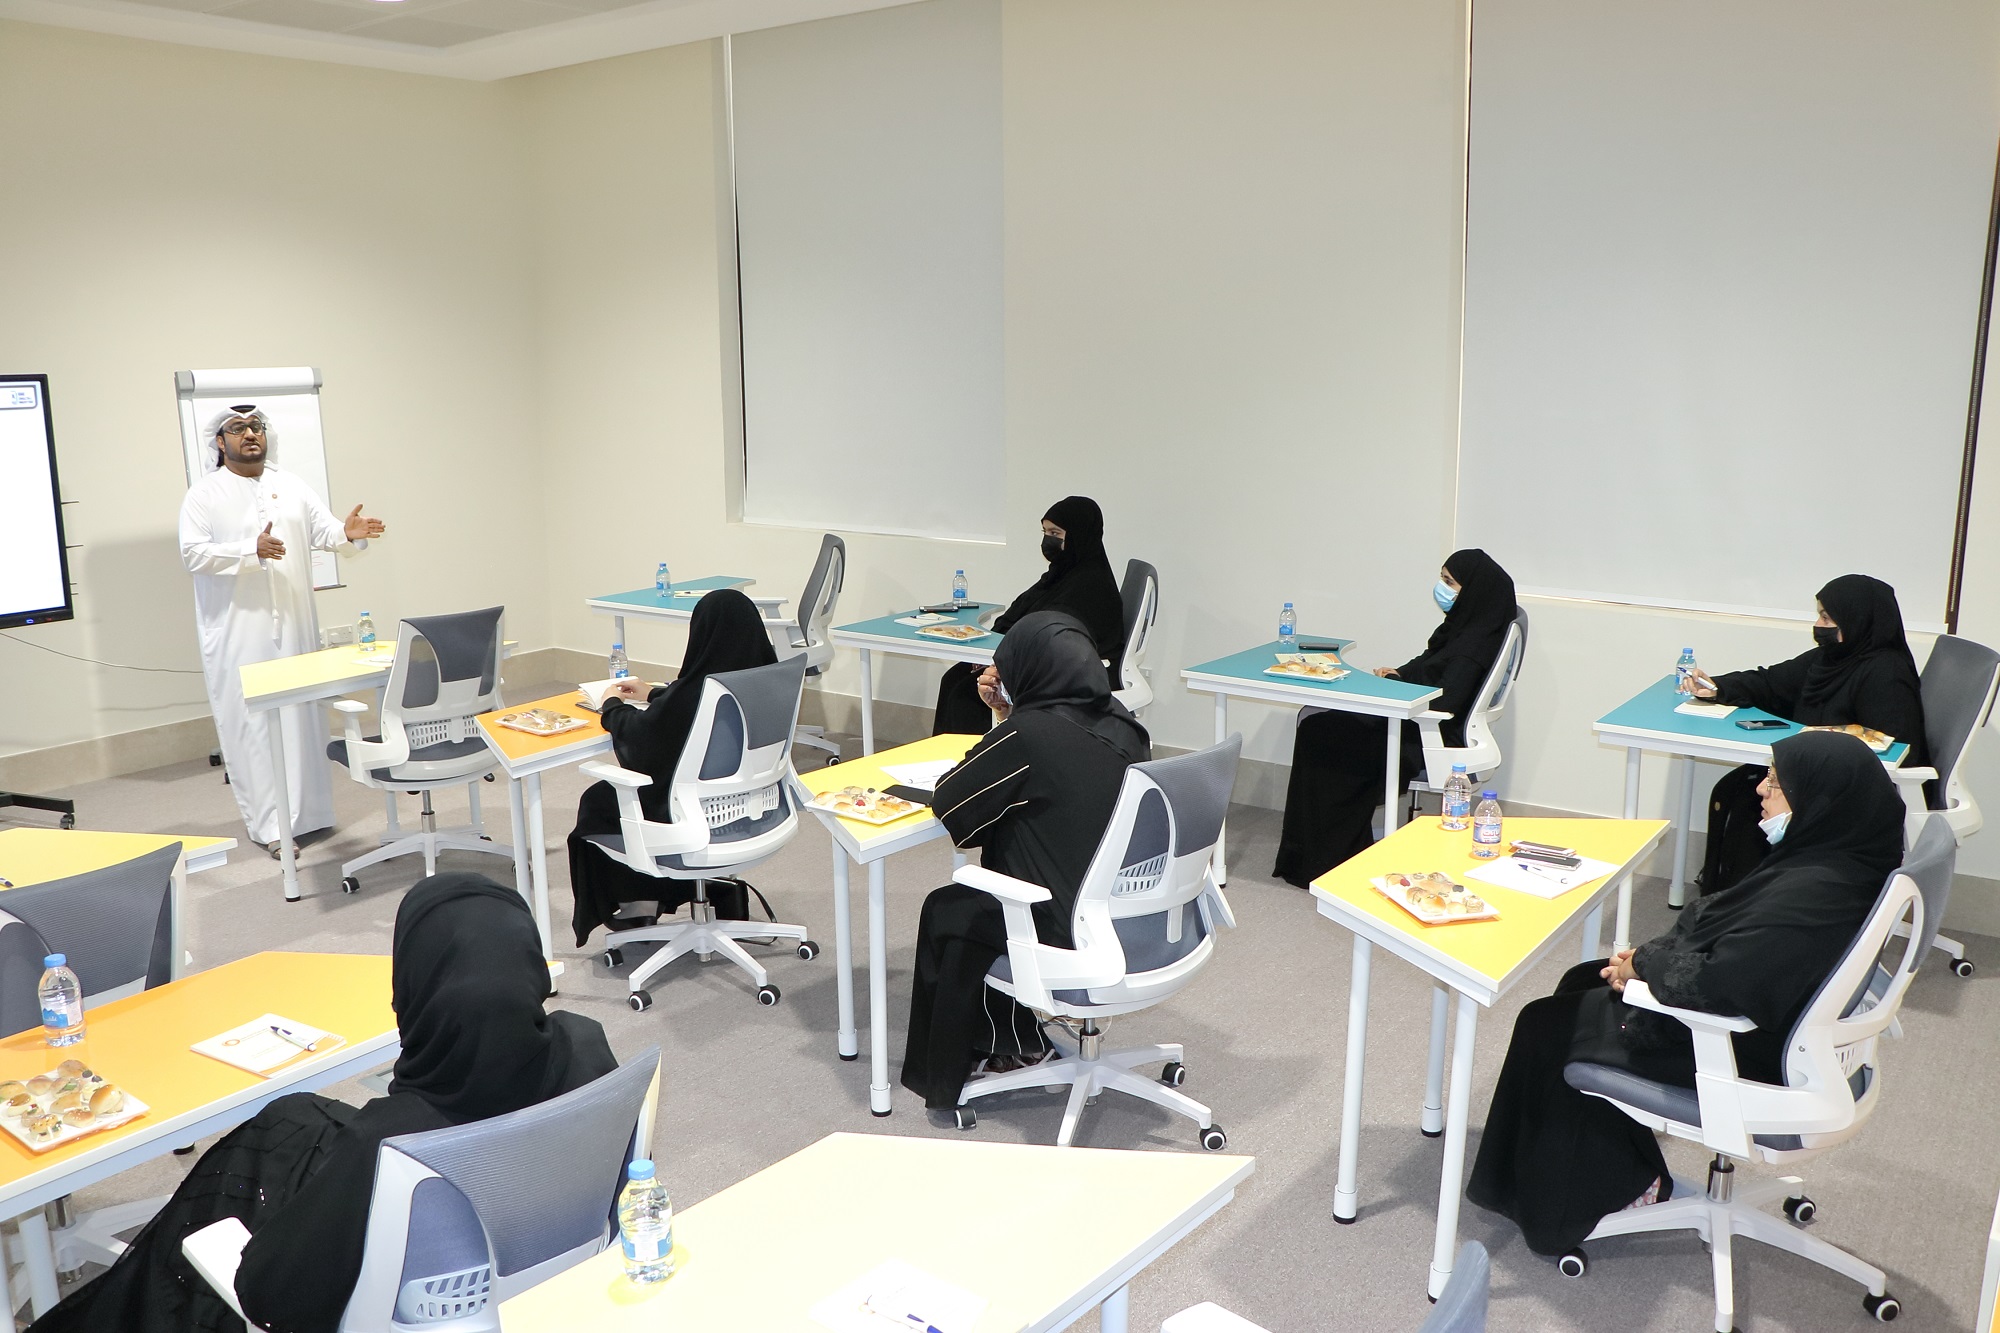 مجلس سيدات أعمال عجمان ينظم ورشة بعنوان "الملكية الفكرية وريادة الأعمال"